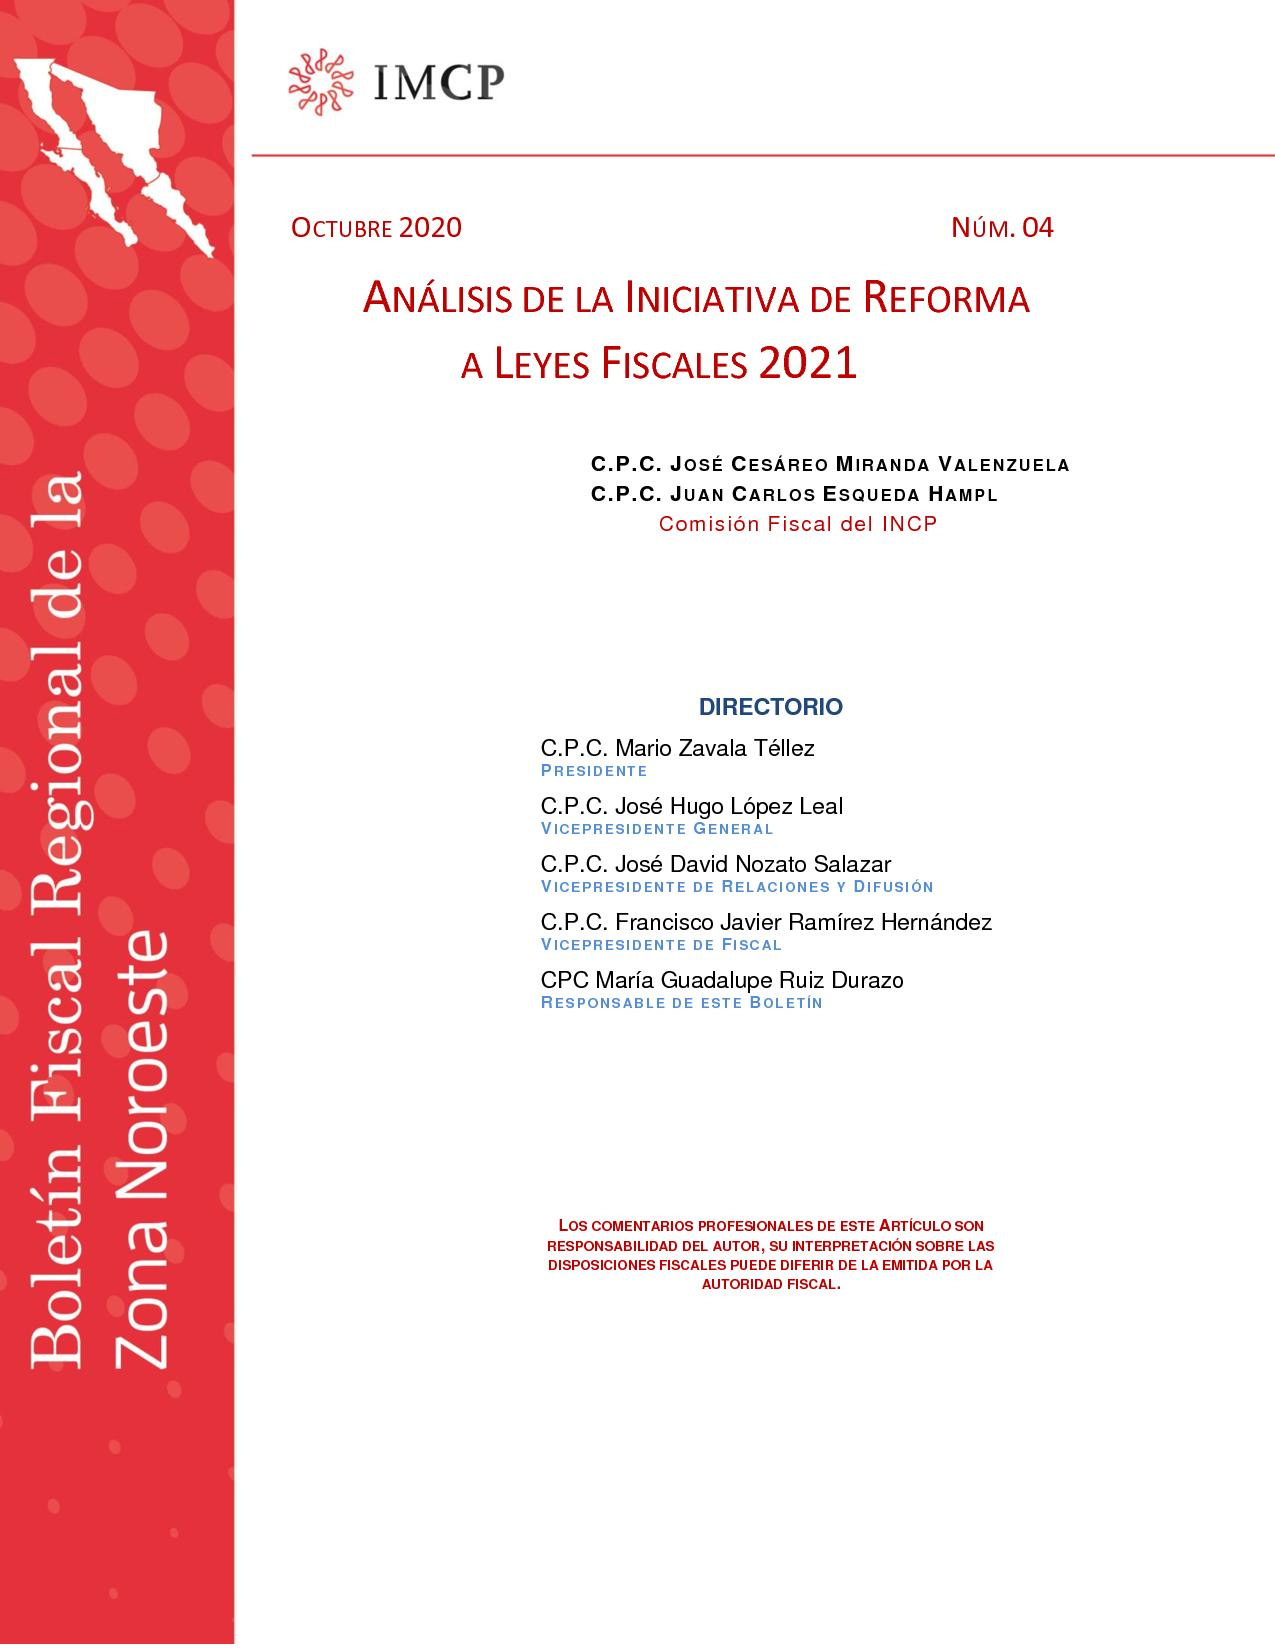 Analisis de la Iniciativa de Reforma Fiscal 2021 - Octubre 2020